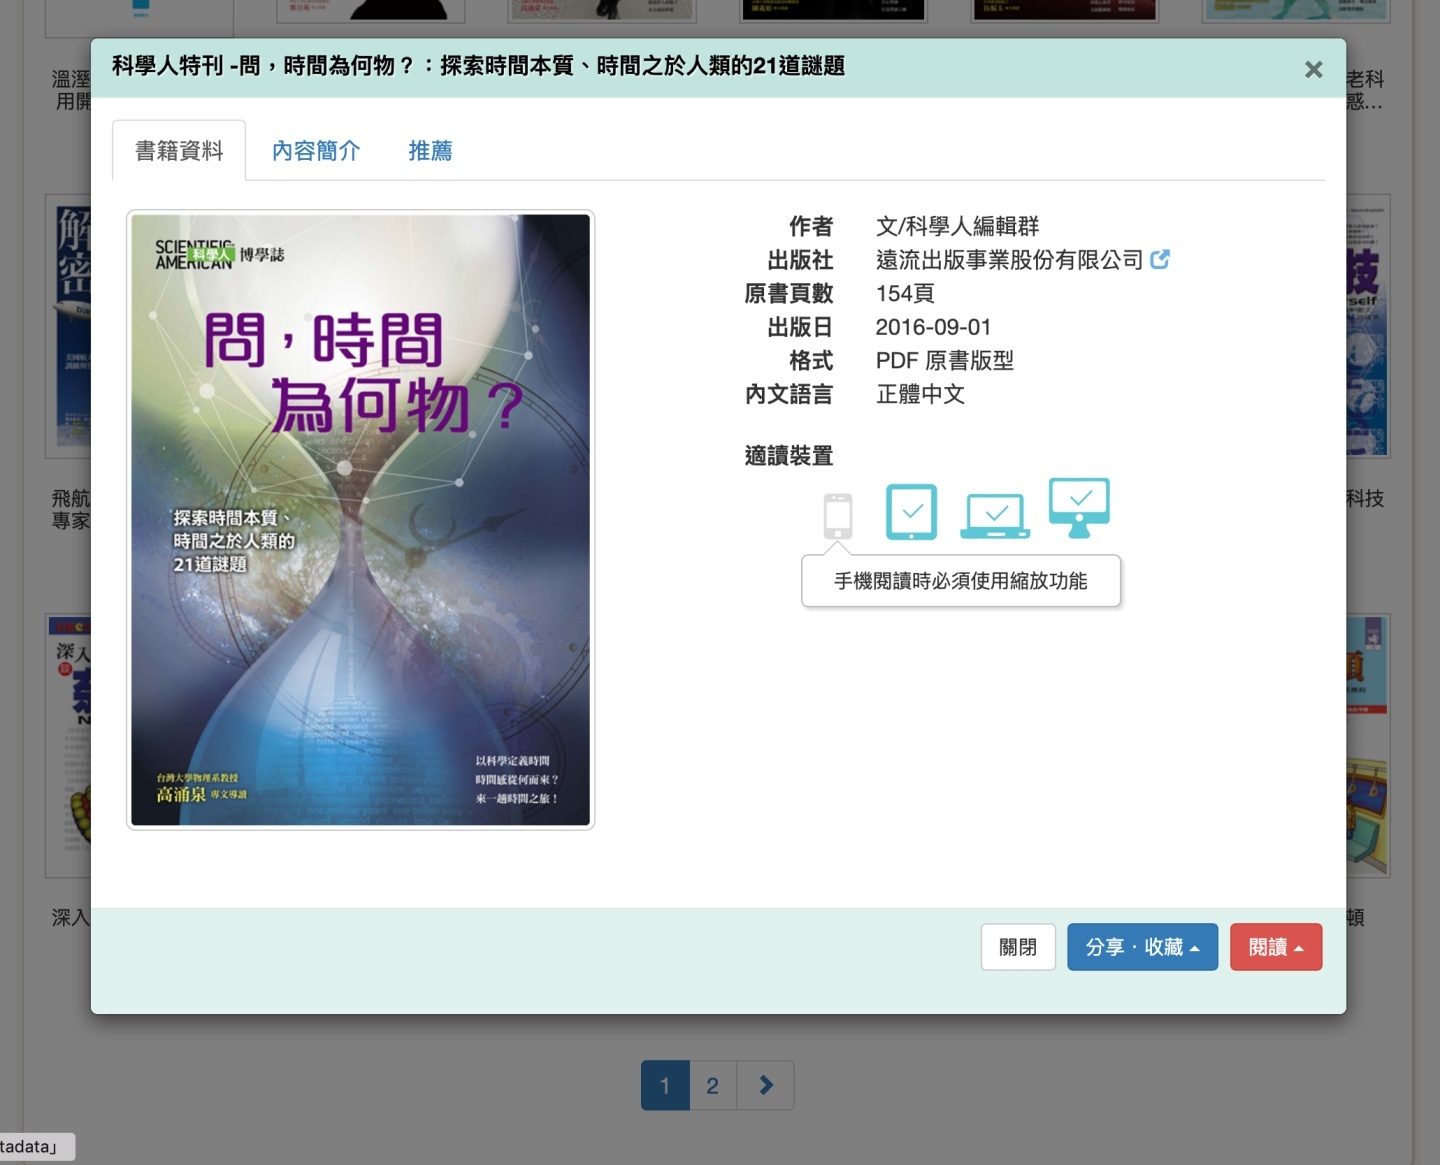 上萬本書籍免費借！『 HyRead 』、『 台灣雲端書庫 』電子書庫網站讓你免費借書！不用去圖書館就可借超方便！